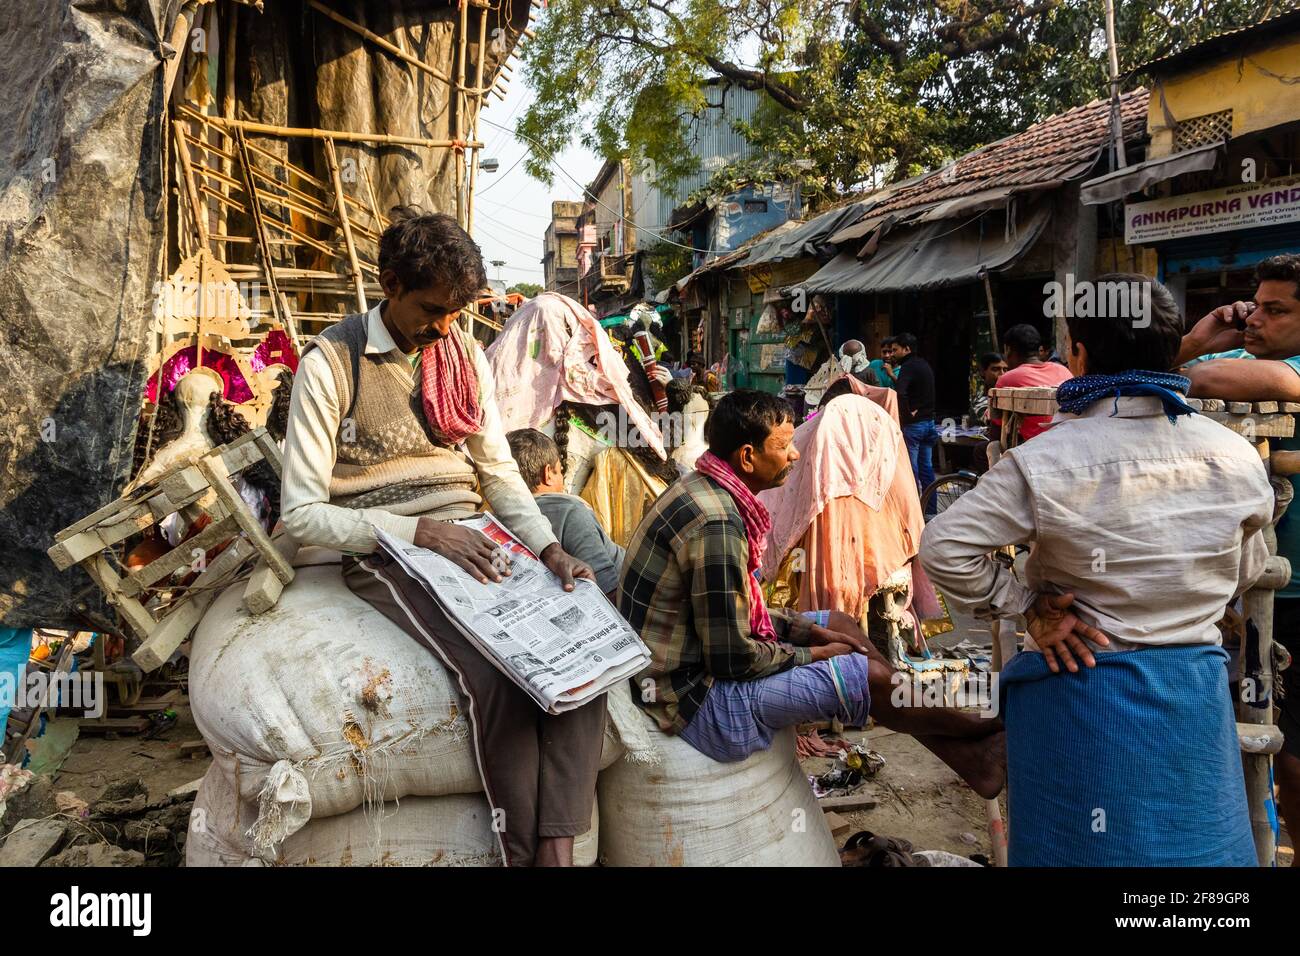 Kolkata, Bengala Occidentale, India - Gennaio 2018: Un uomo indiano che legge un giornale seduto su un mucchio di sacchi su una strada affollata a Kumartuli. Foto Stock